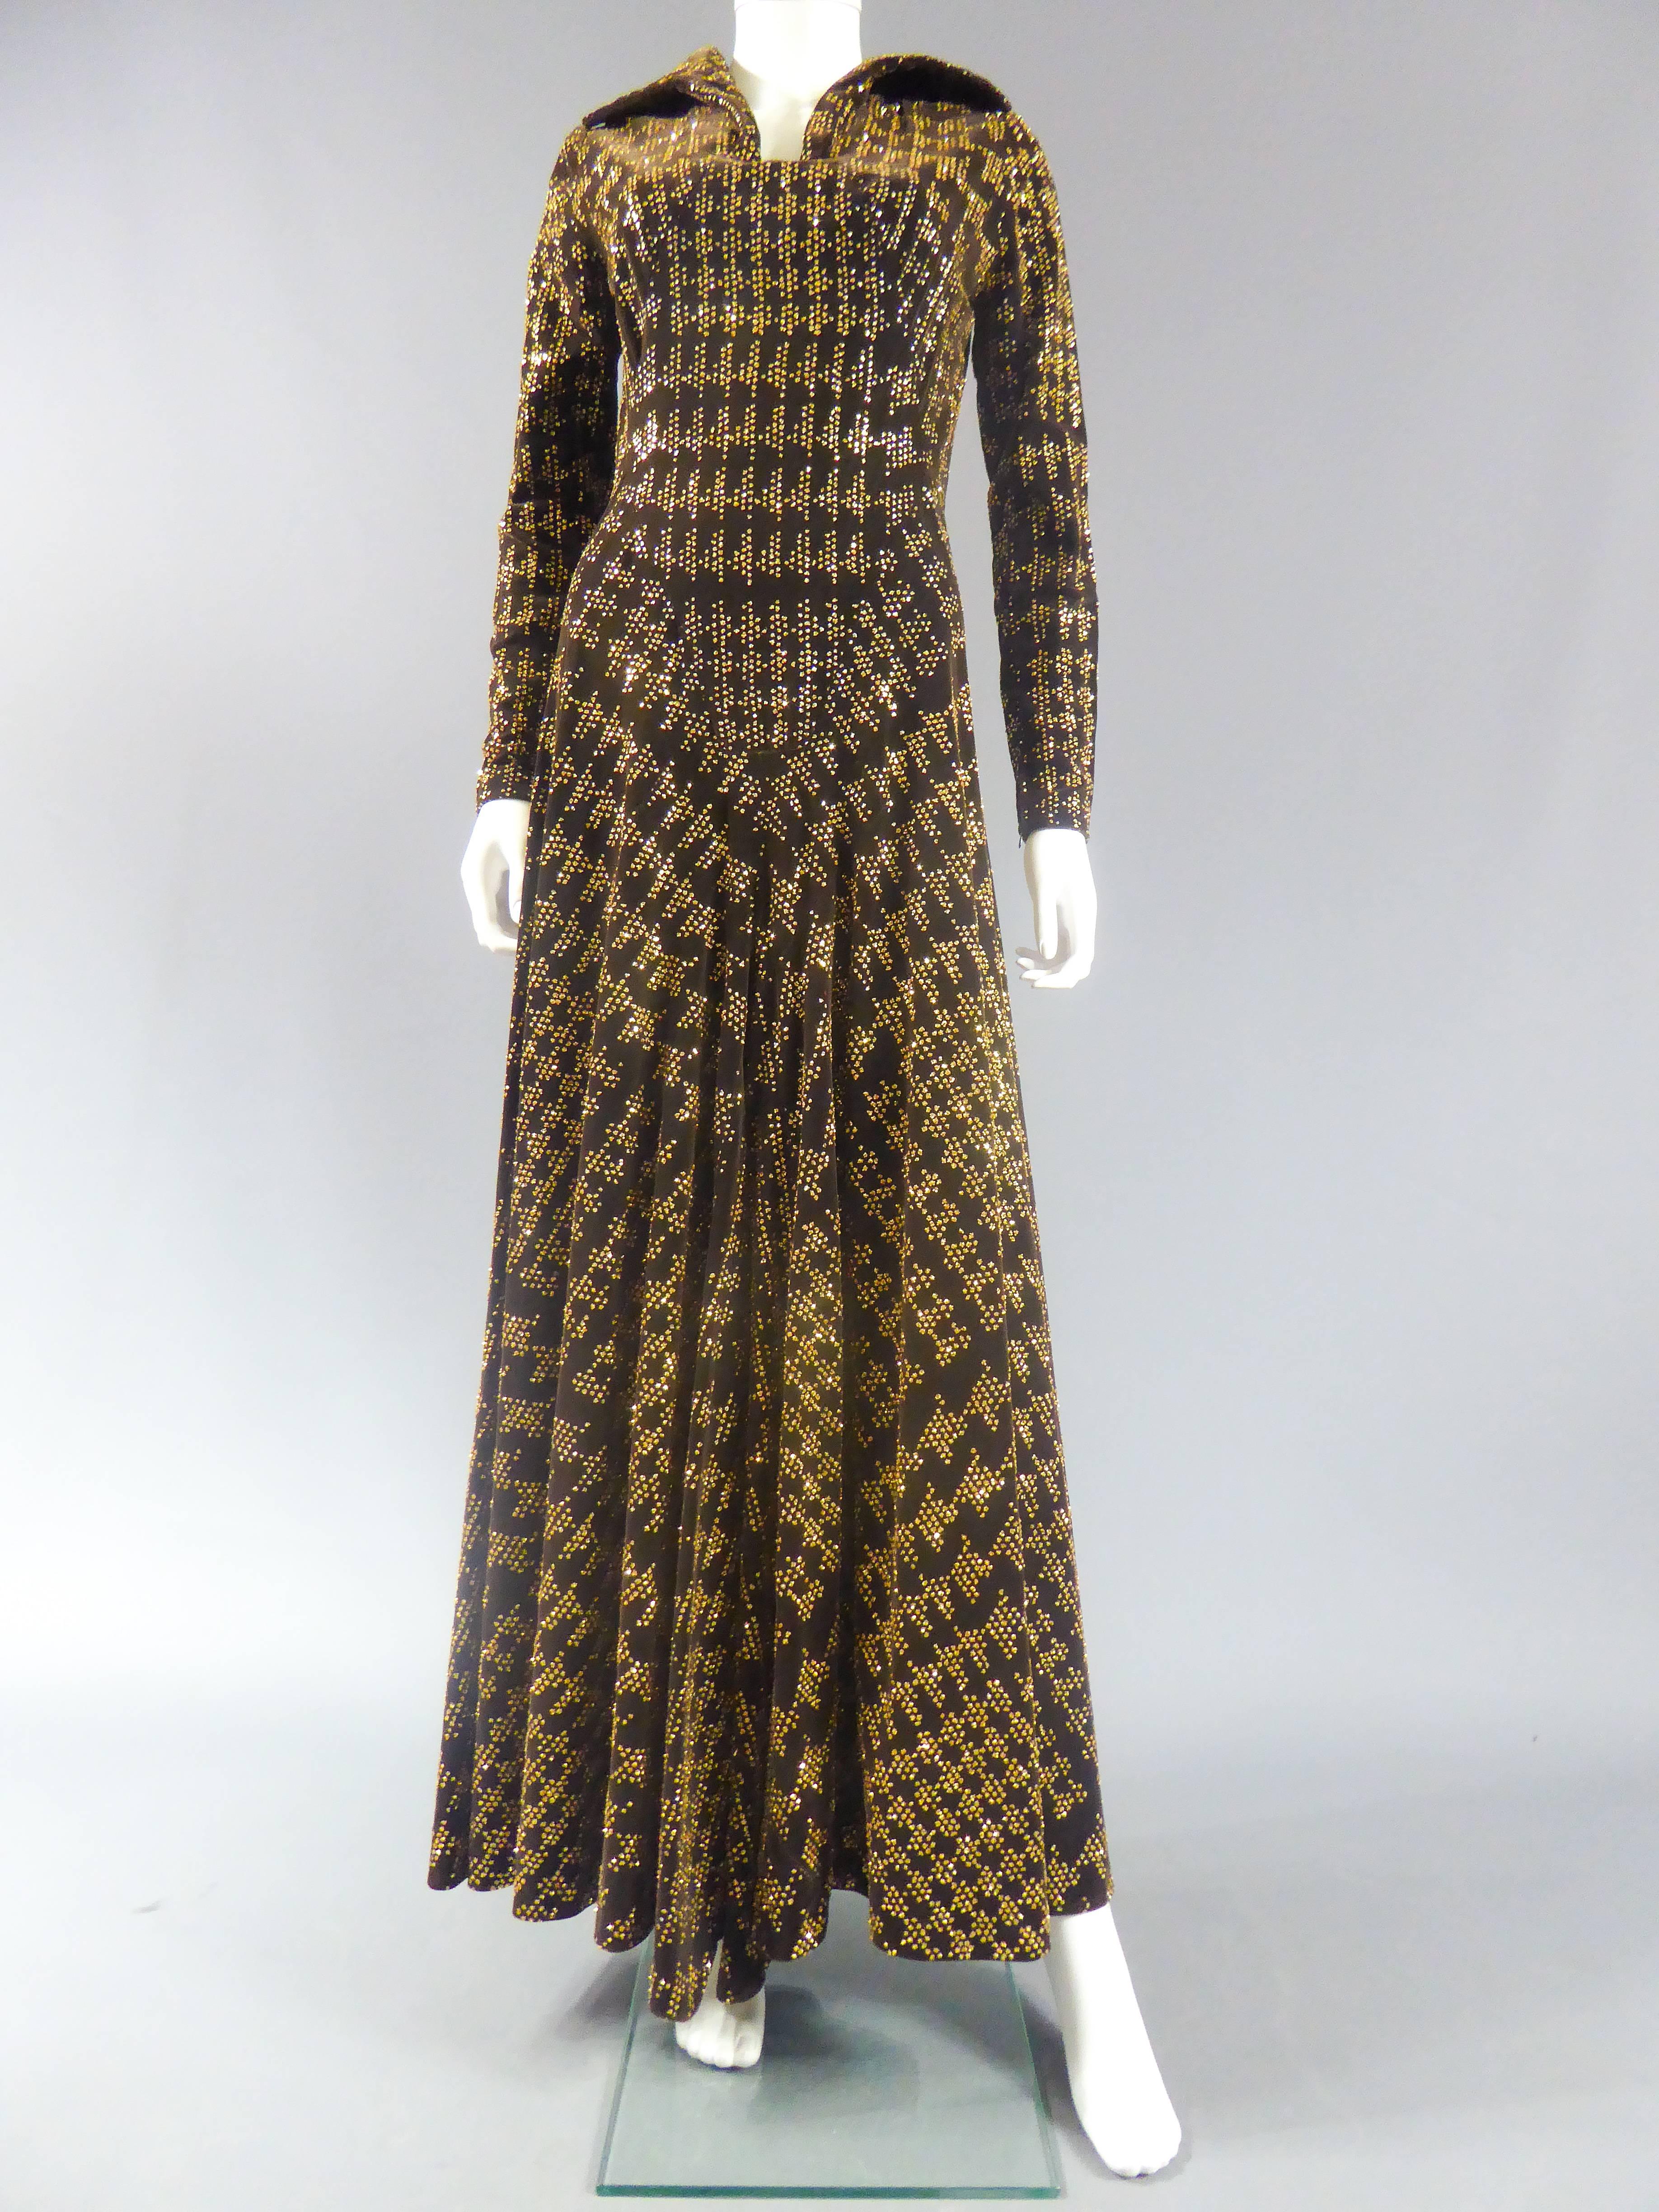 1975 dress